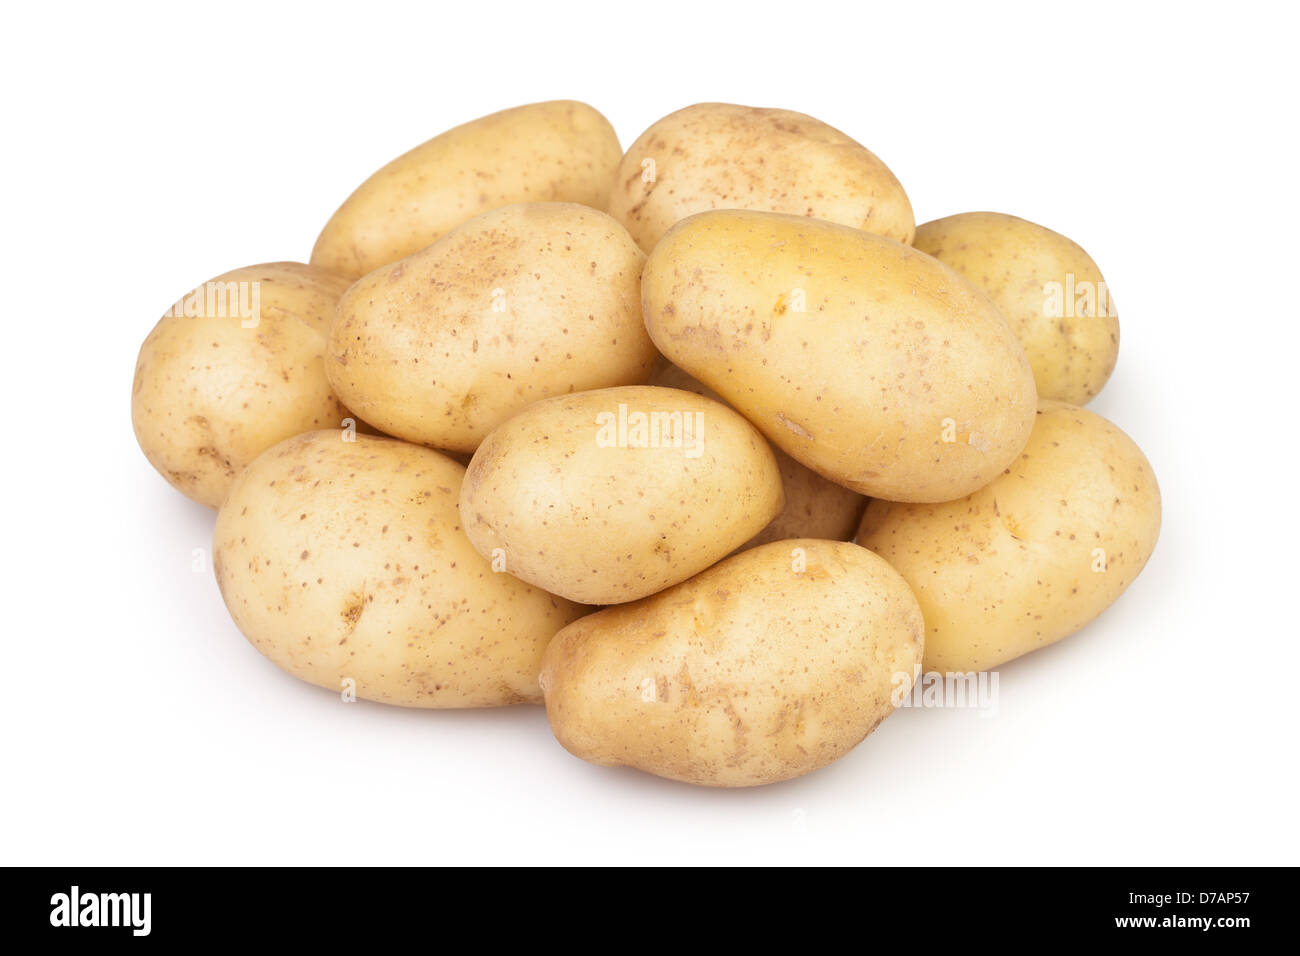 potato new on white background Stock Photo